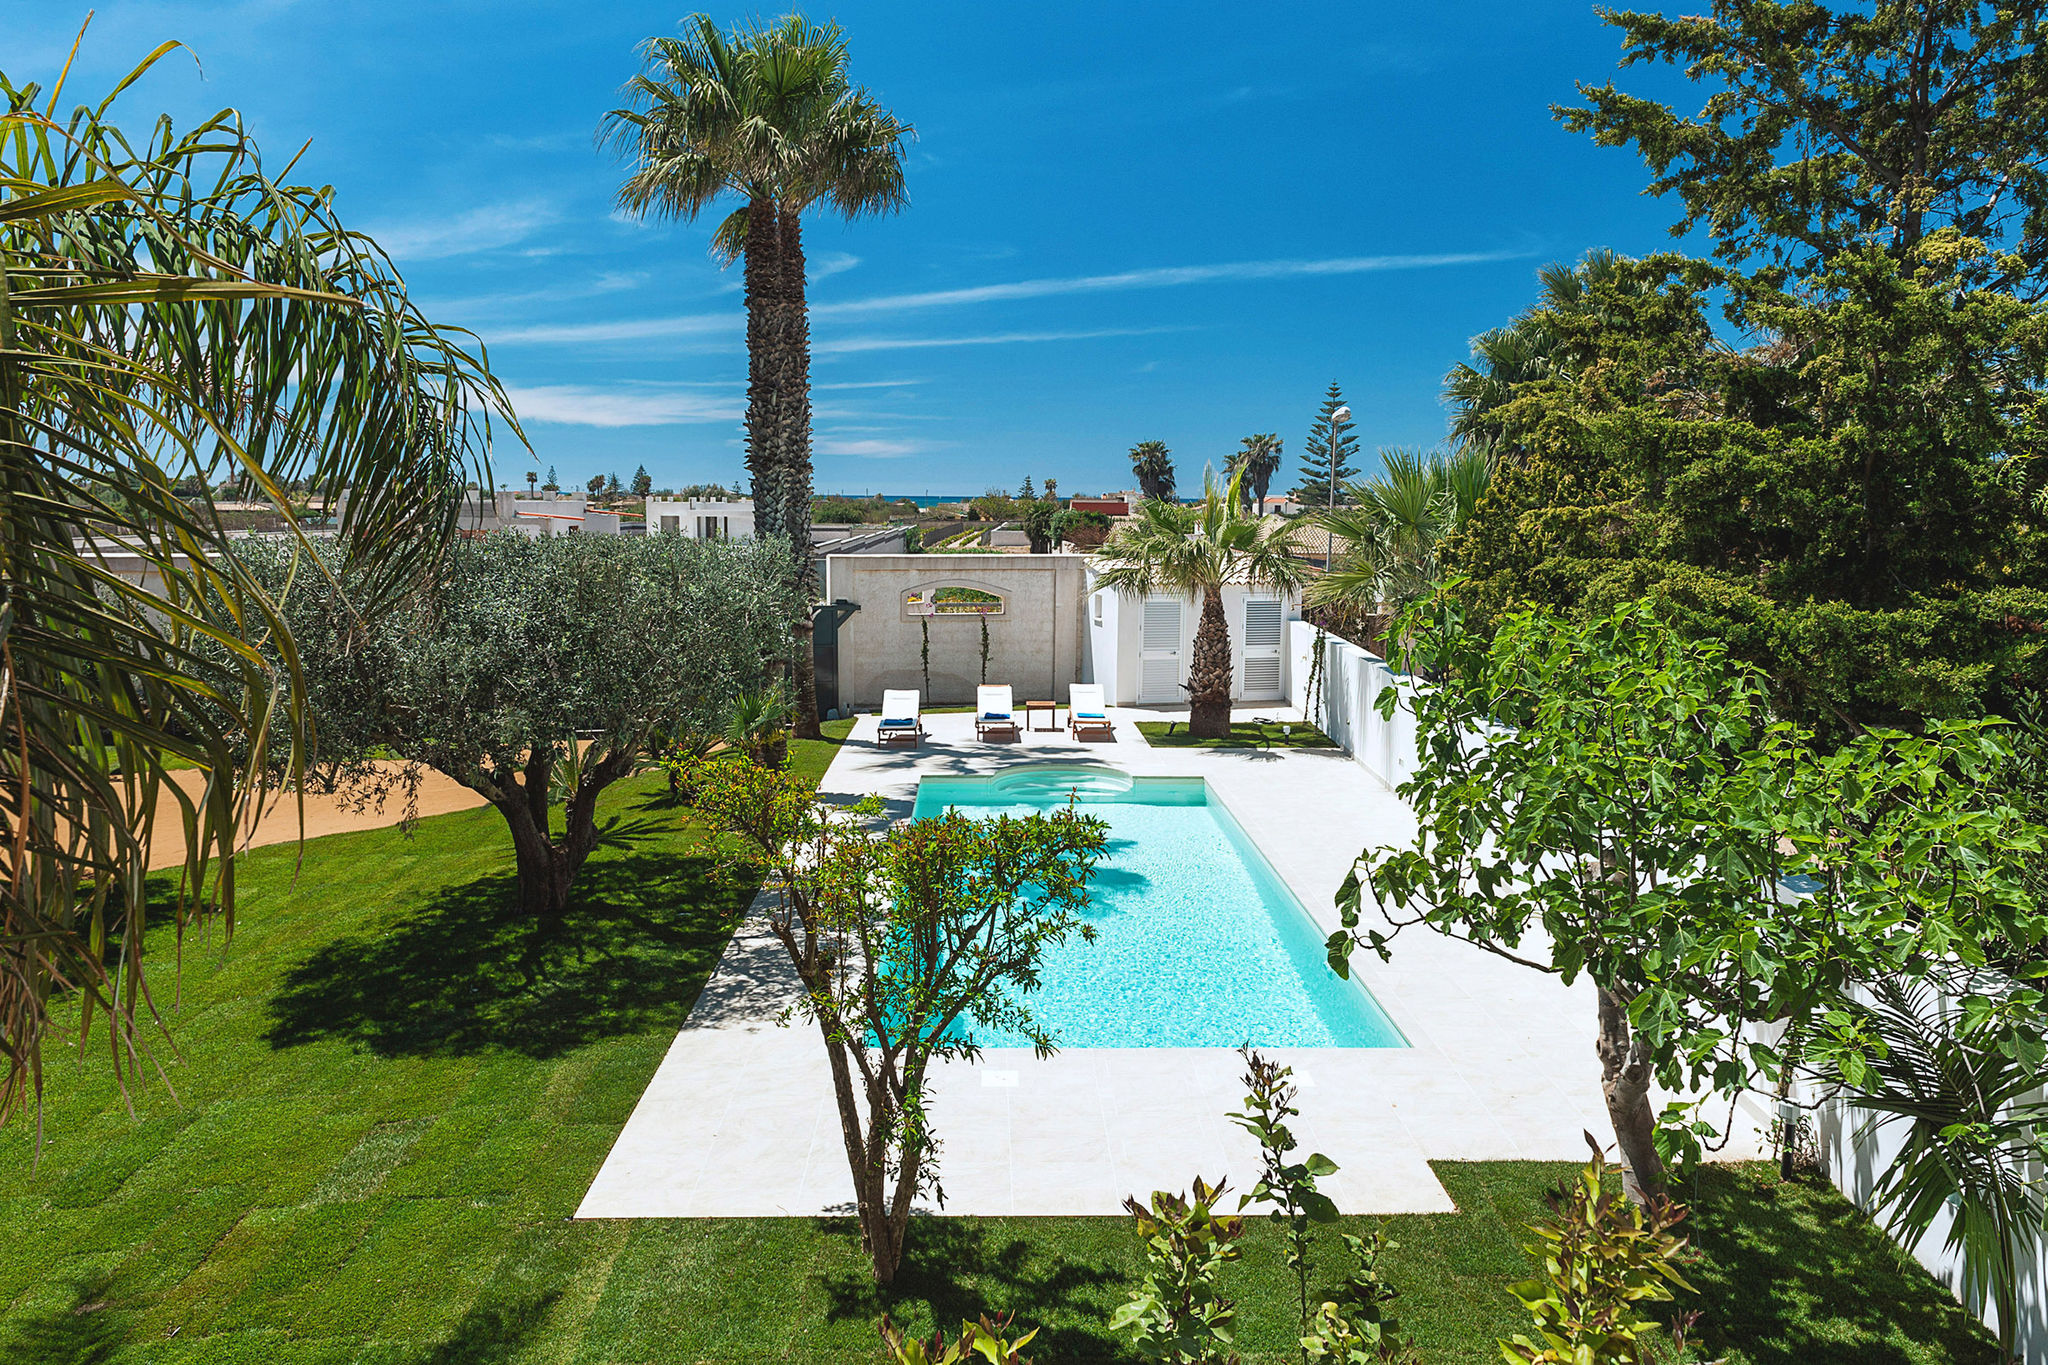 Elegant appartement in een villa, met zwembad en tuin, op enkele km van zee!